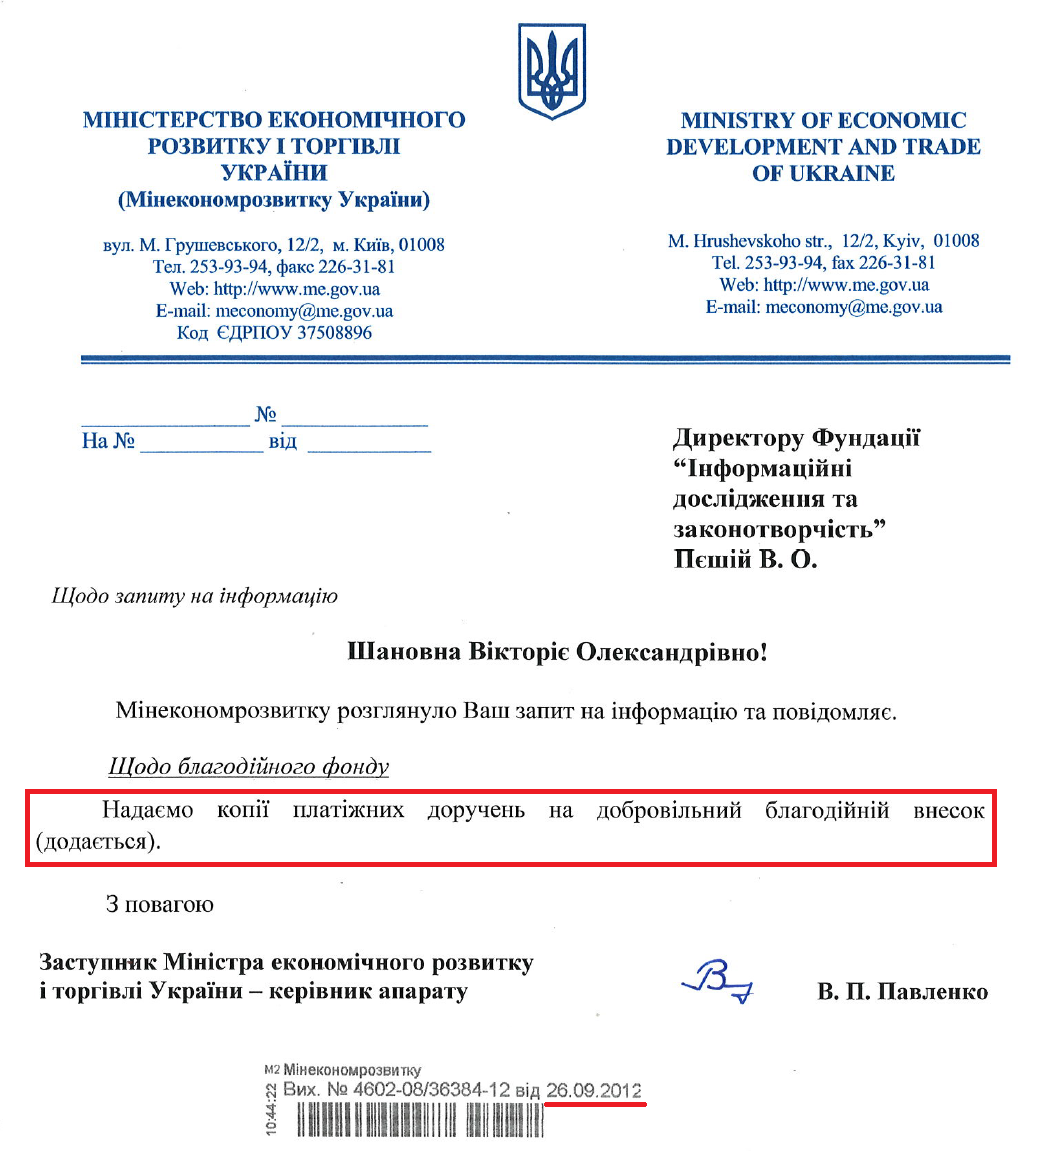 Лист Заступника міністра економічного розвитку і торгівлі України В.П.Павленка від 26 вересня 2012 року